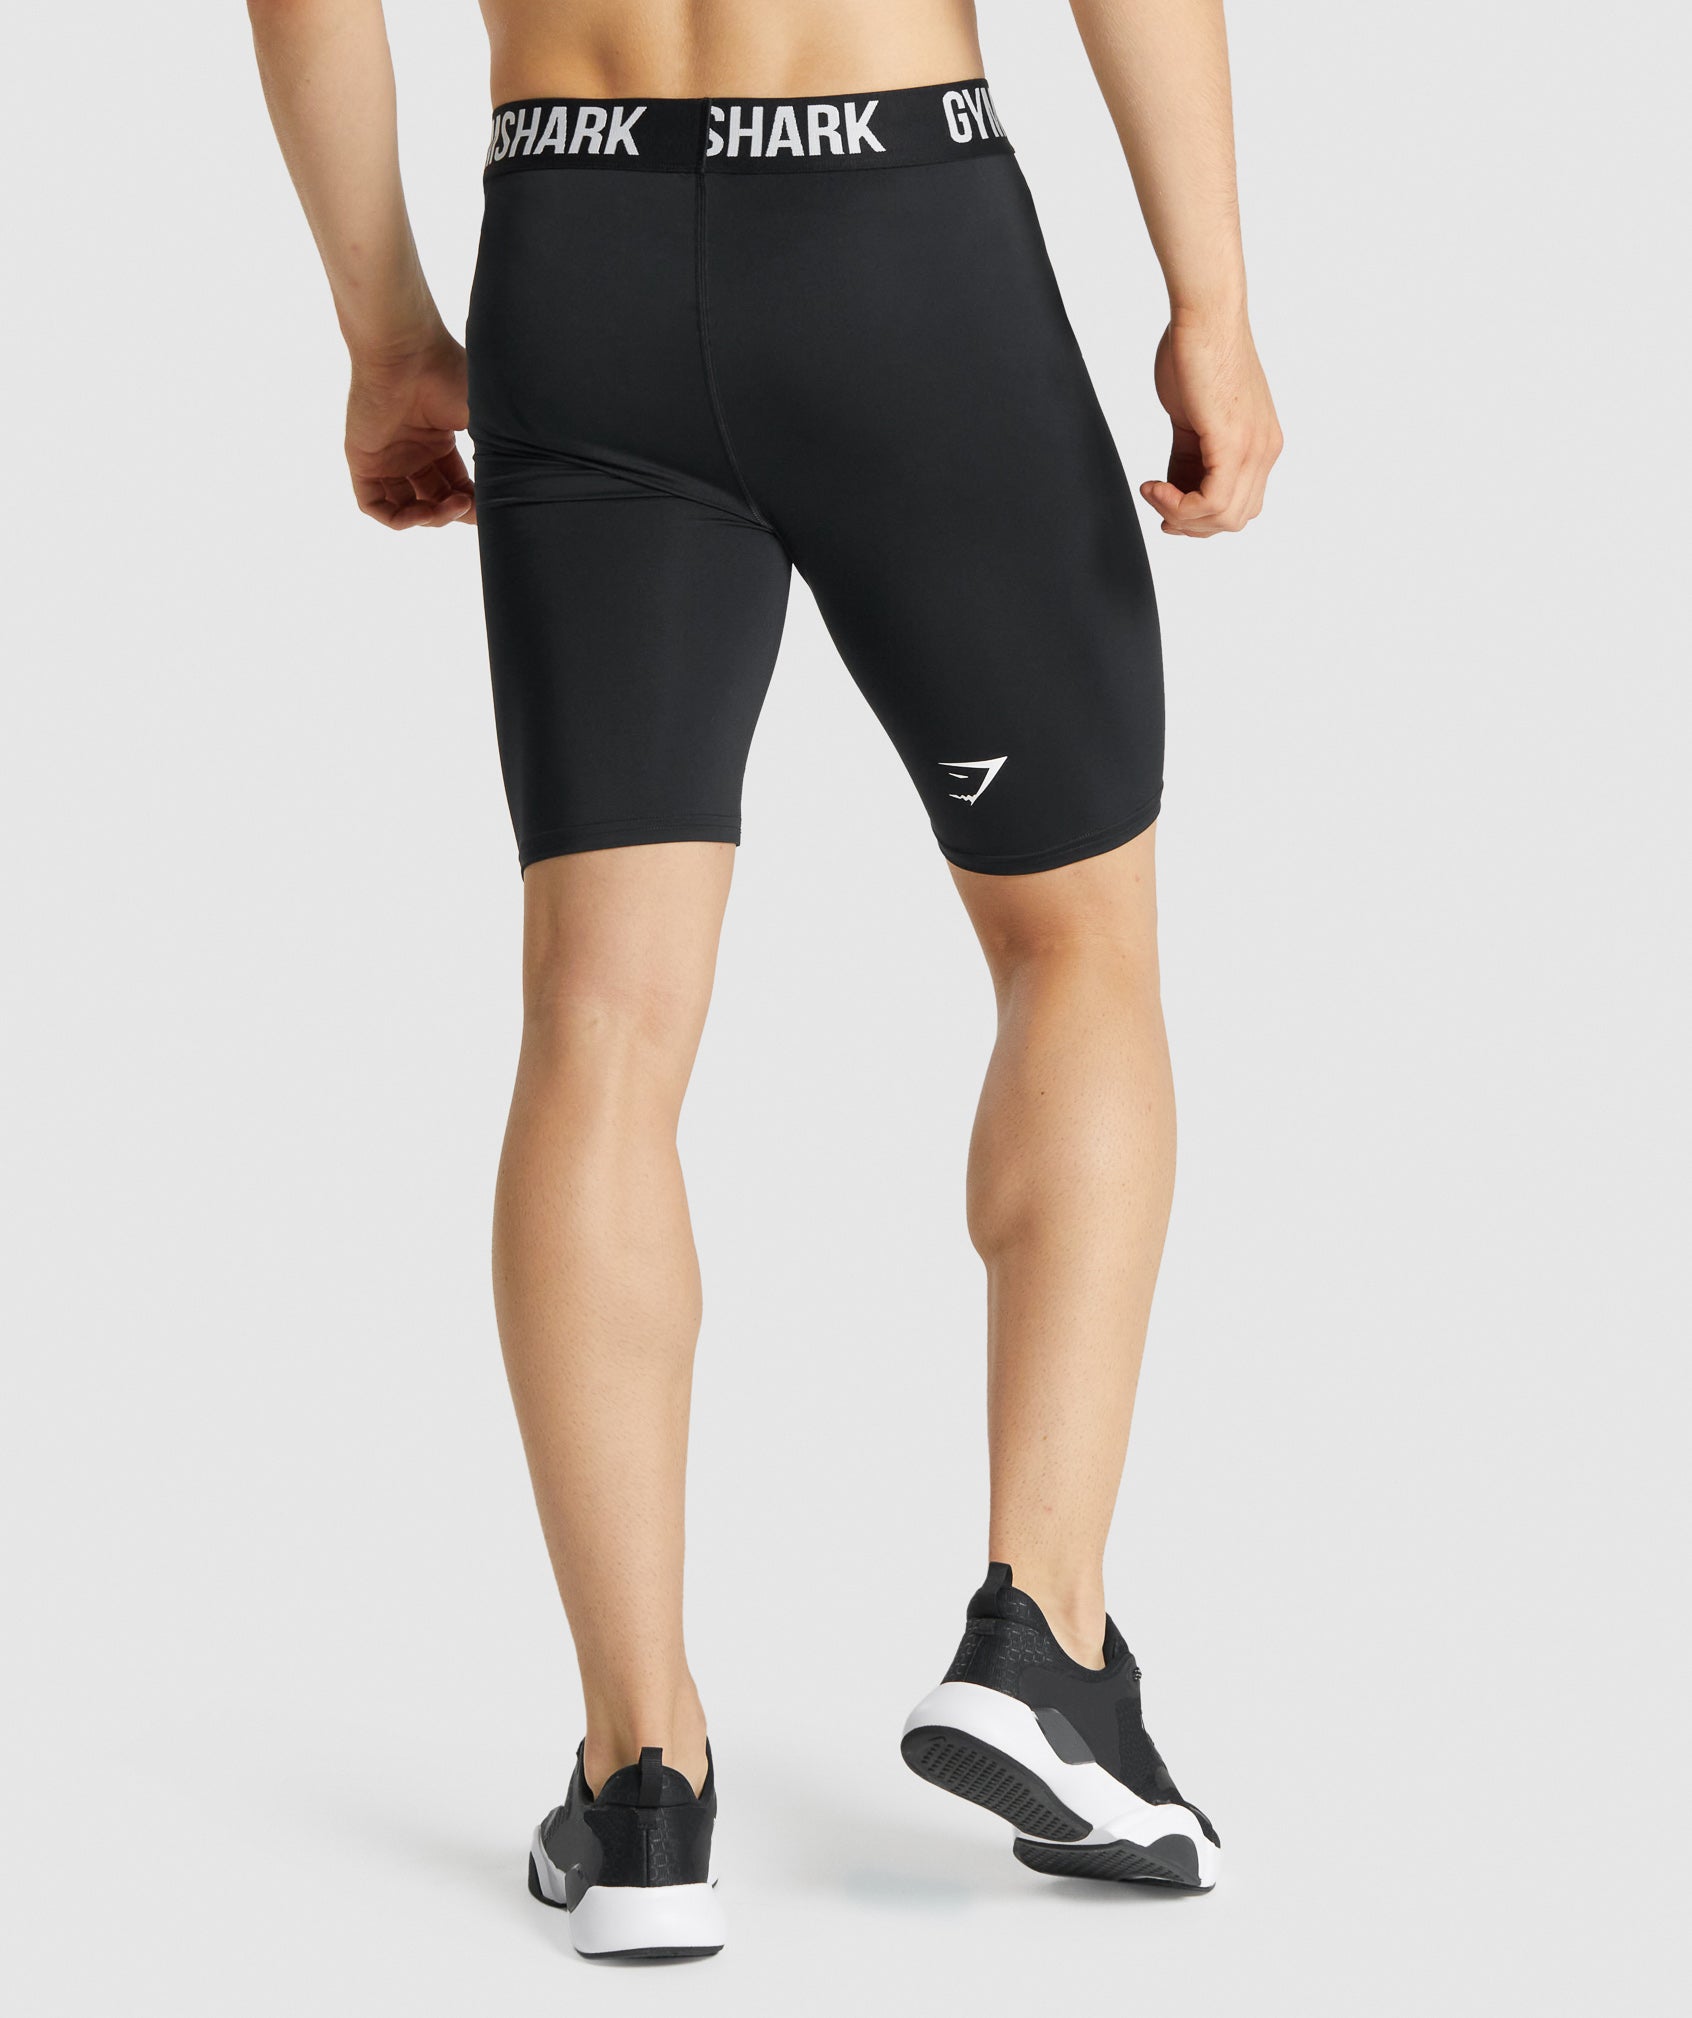 Gymshark Shorts - Element Baselayer Men Black 🔹 Size : M Fits L 🔹Qualité  10/10 🔹 Delivery 📦 : livraison partout au Maroc 🇲🇦 ( 35dh ) 🔹 Av…